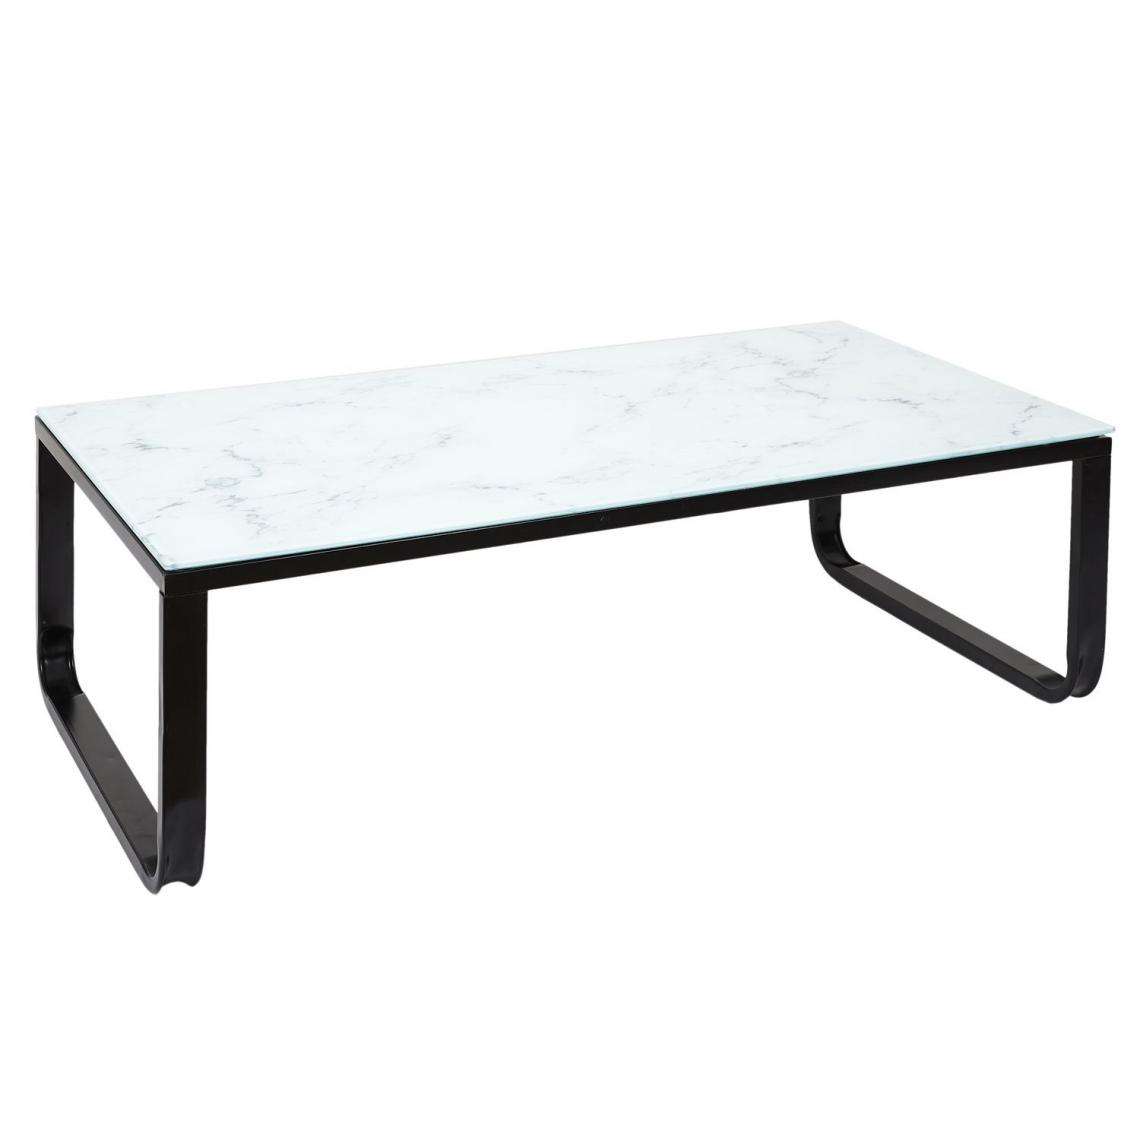 Toilinux - Table basse en verre effet marbre - Blanc et Noir - Tables basses